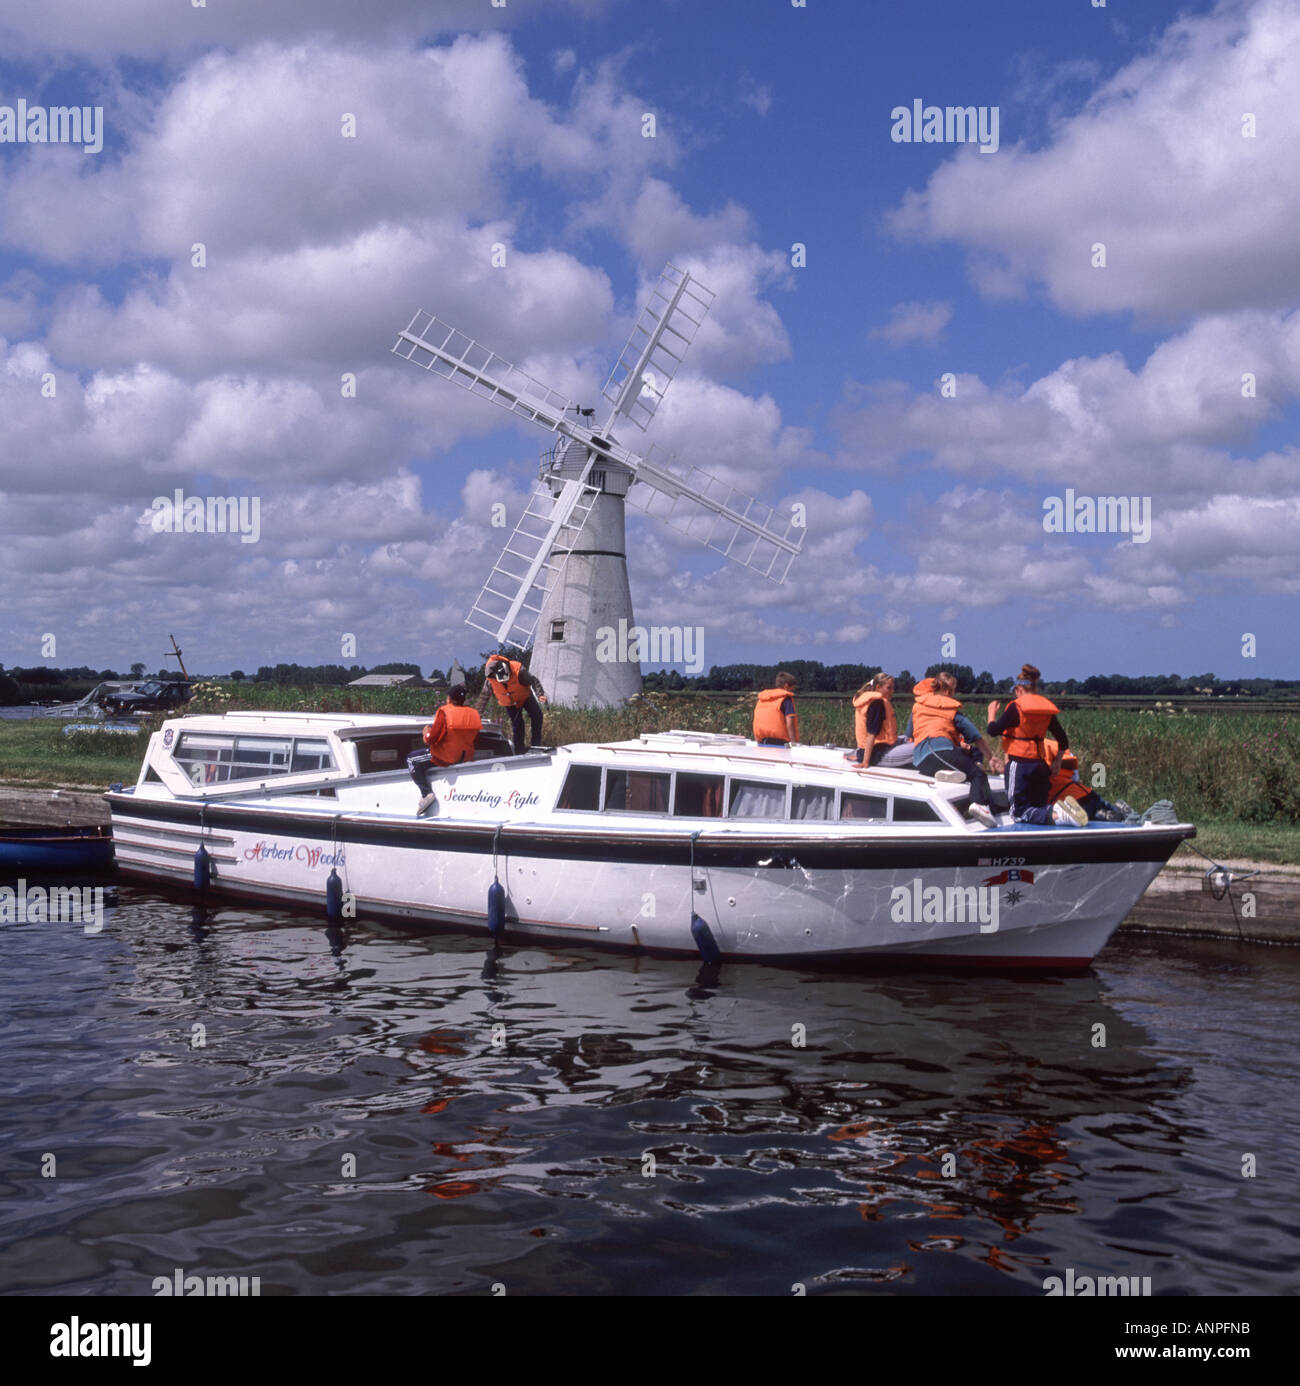 Groupe de jeunes filles adolescents et de mineurs sur un croiseur de cabine amarré portant une veste de vie haute vis orange à la pompe à vent Thurne Dyke sur Norfolk Broads Angleterre Royaume-Uni Banque D'Images